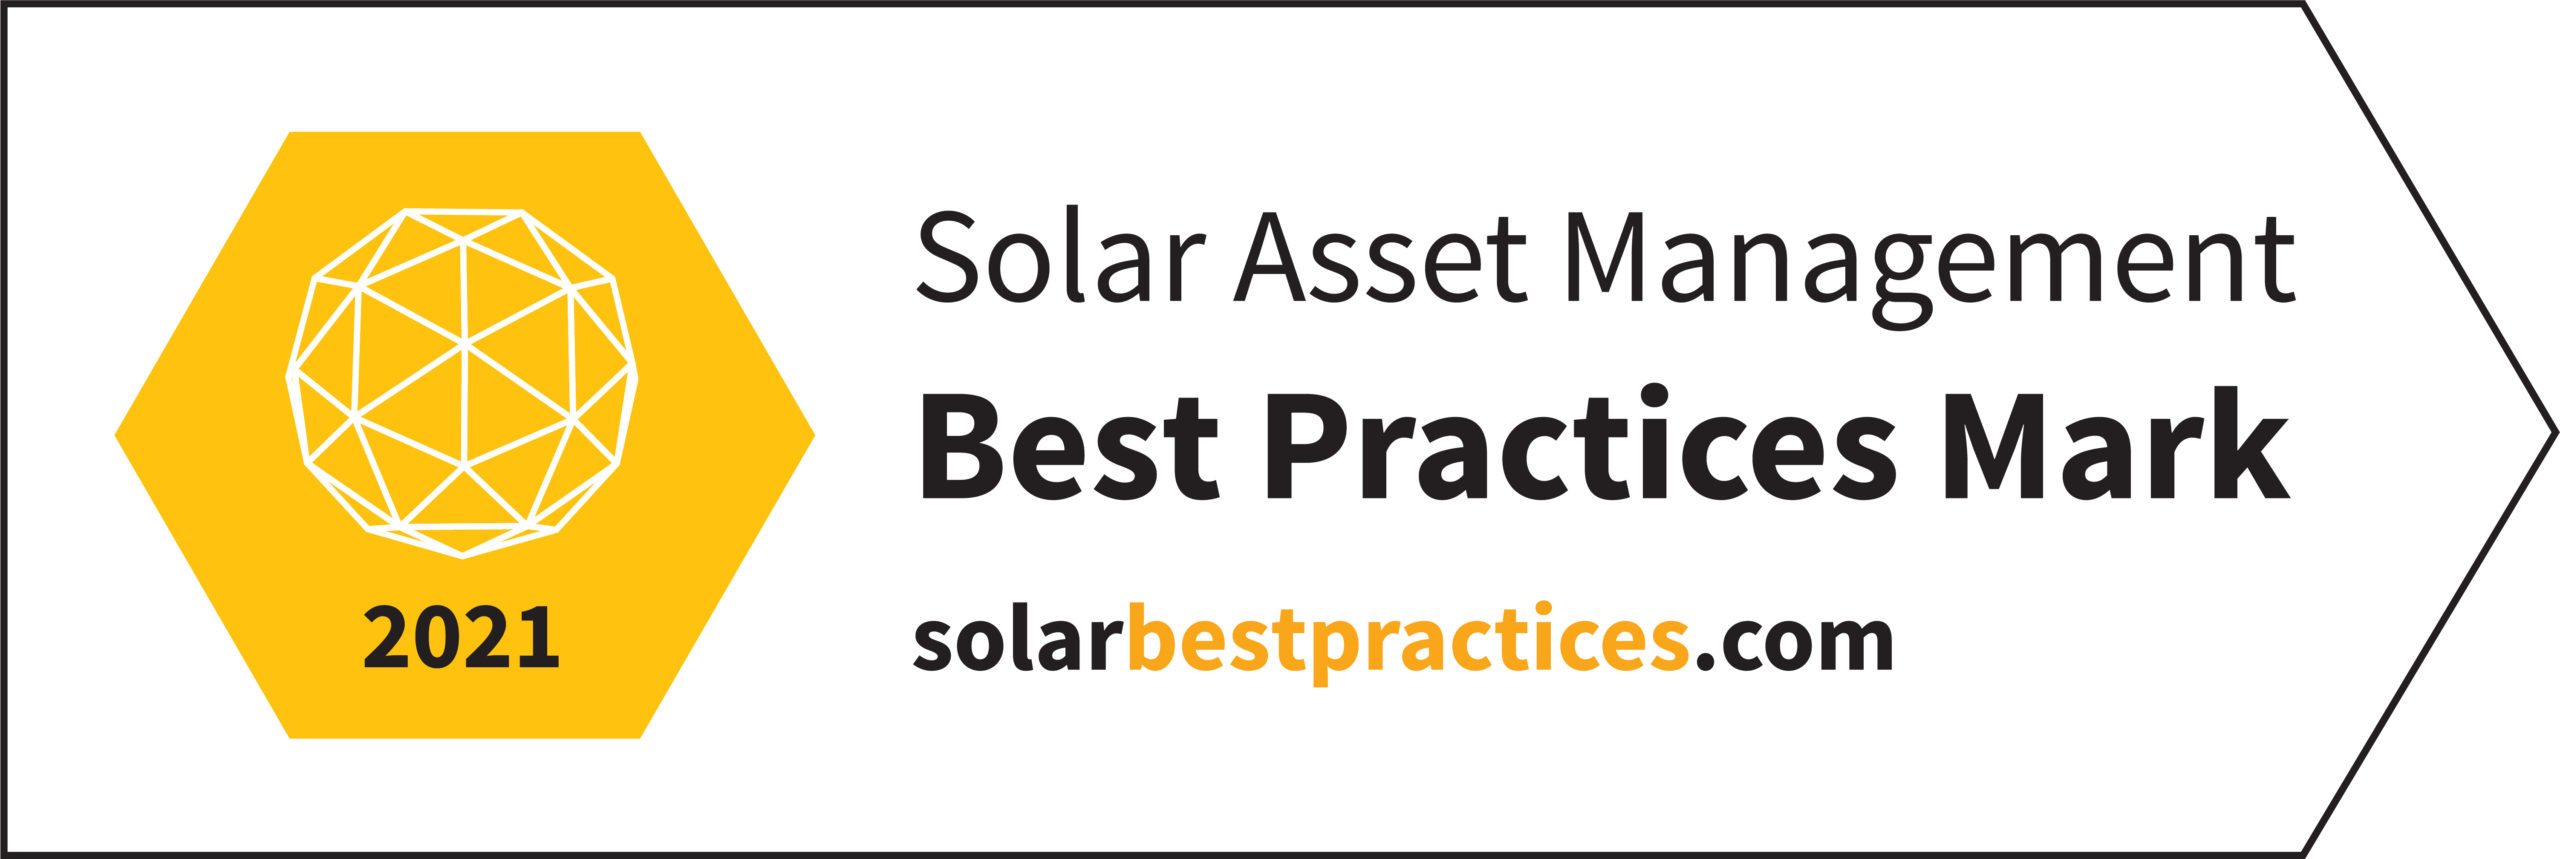 solar asset management